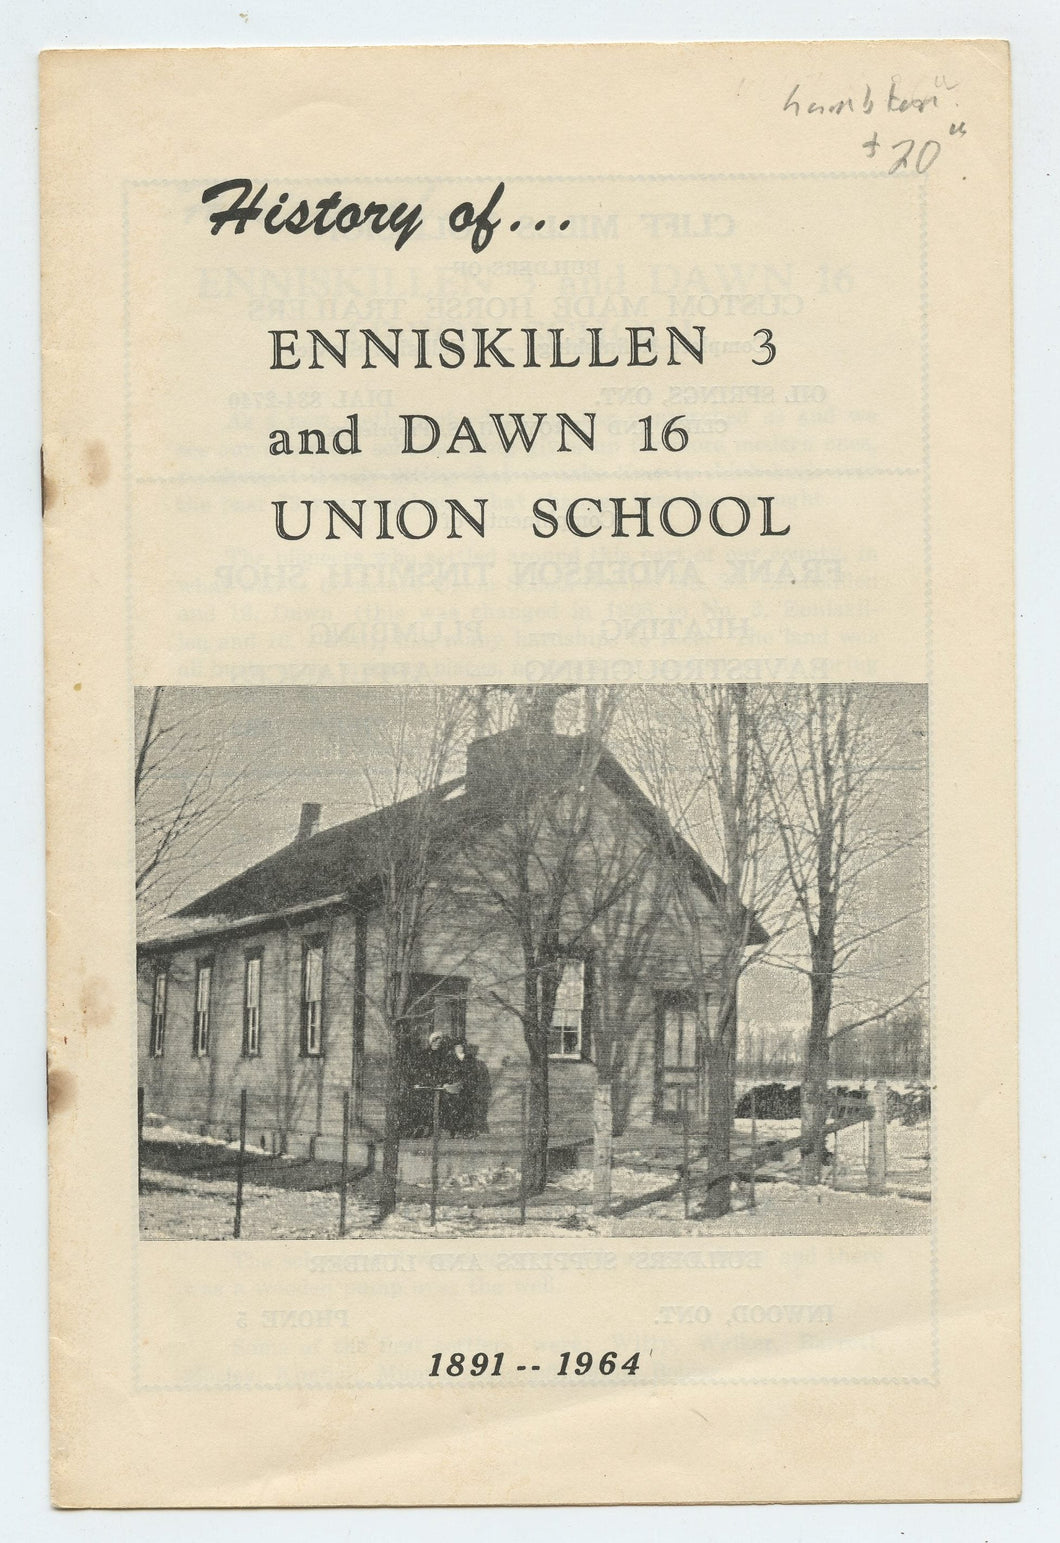 History of ... Enniskillen 3 and Dawn 16 Union School 1891-1964